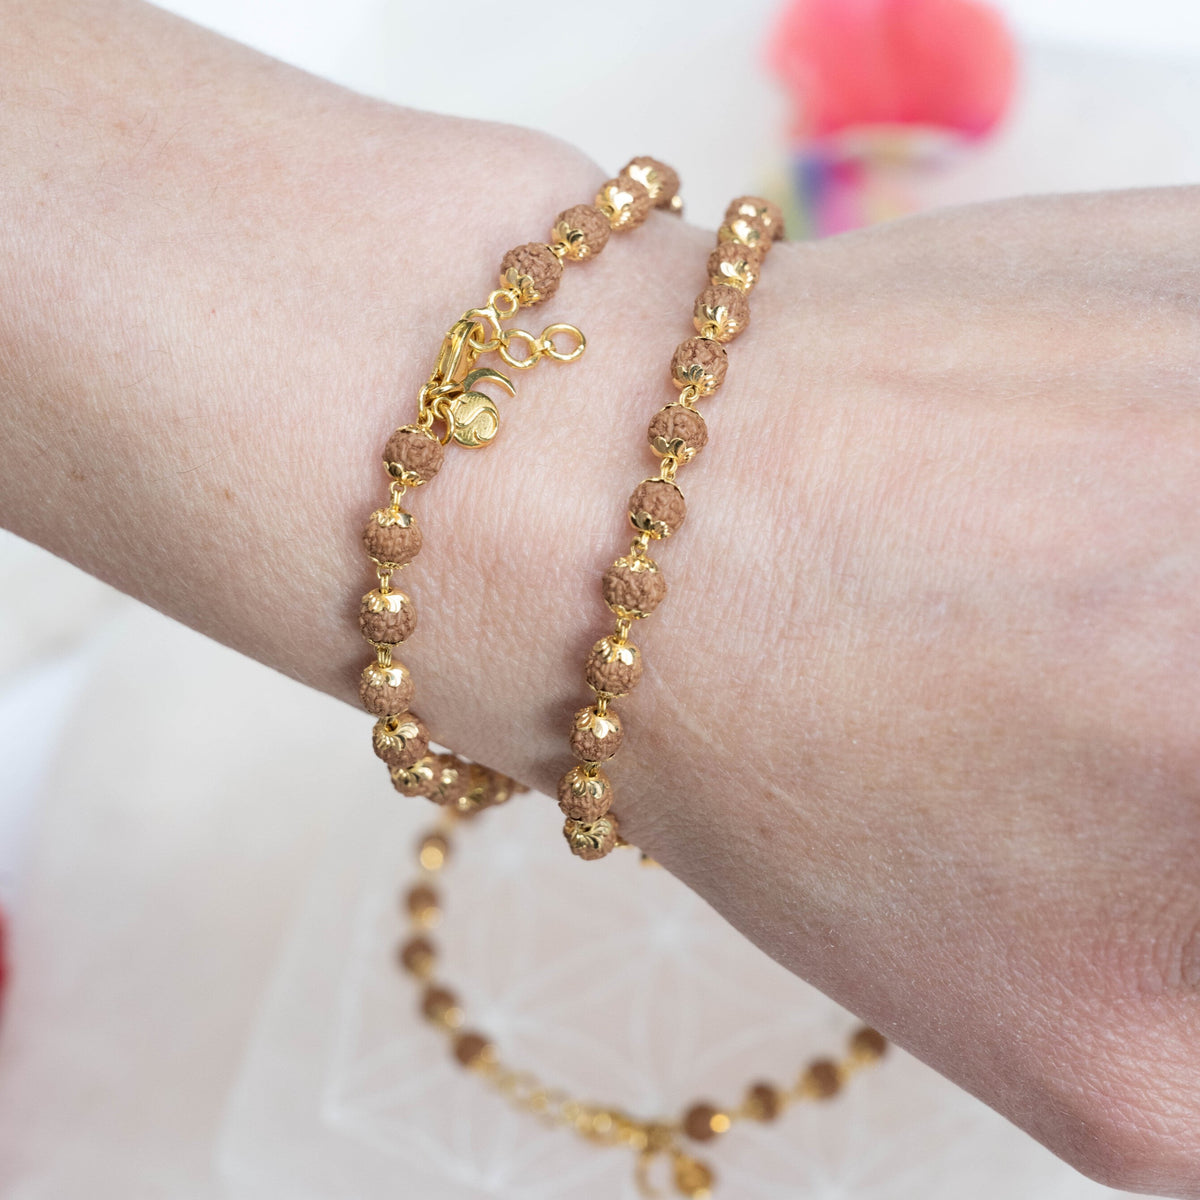 a gold bracelet with a rudraksh